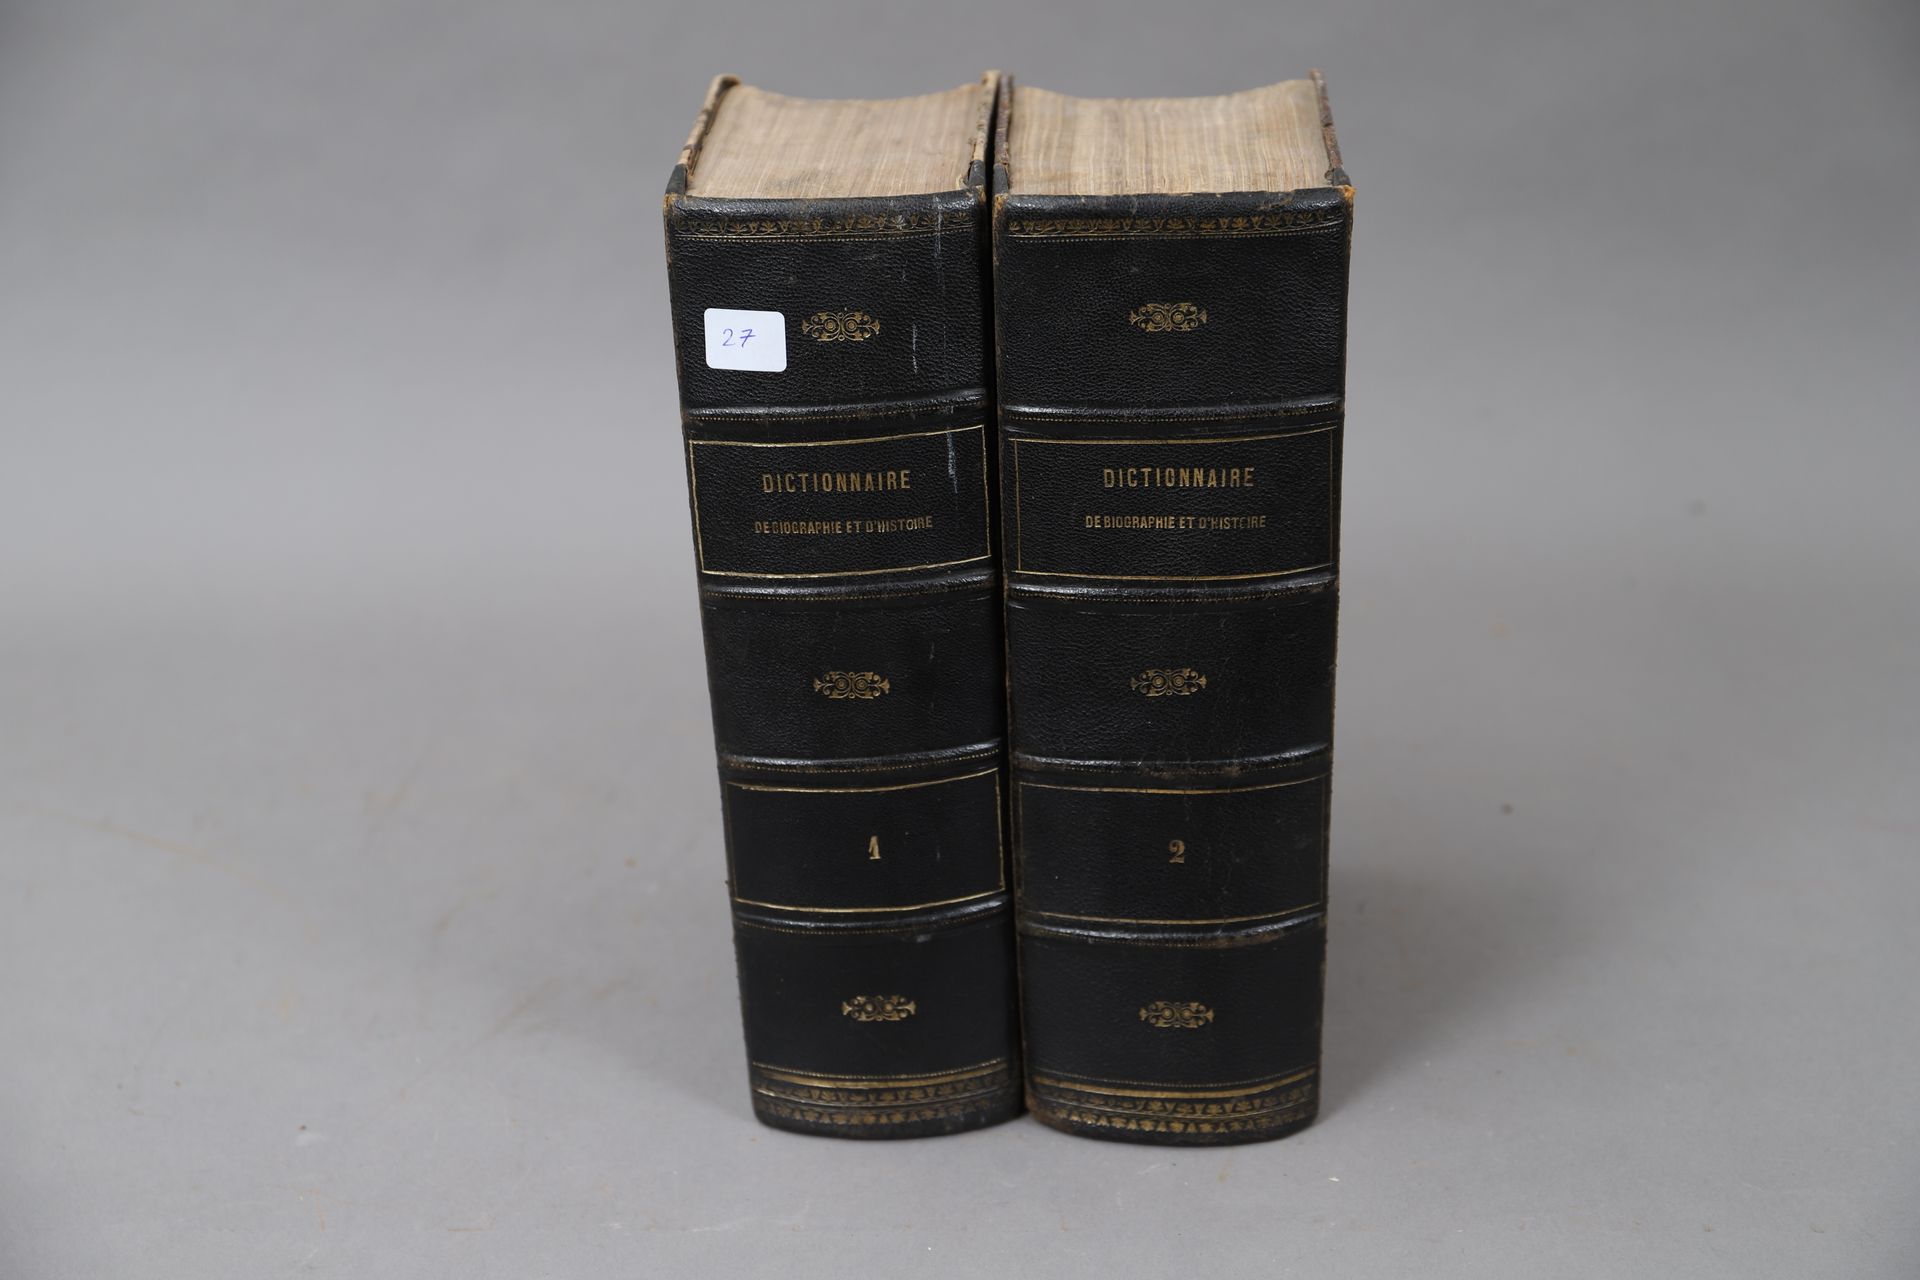 Null DIZIONARIO DI STORIA. 

1873

2 volumi, rilegati.